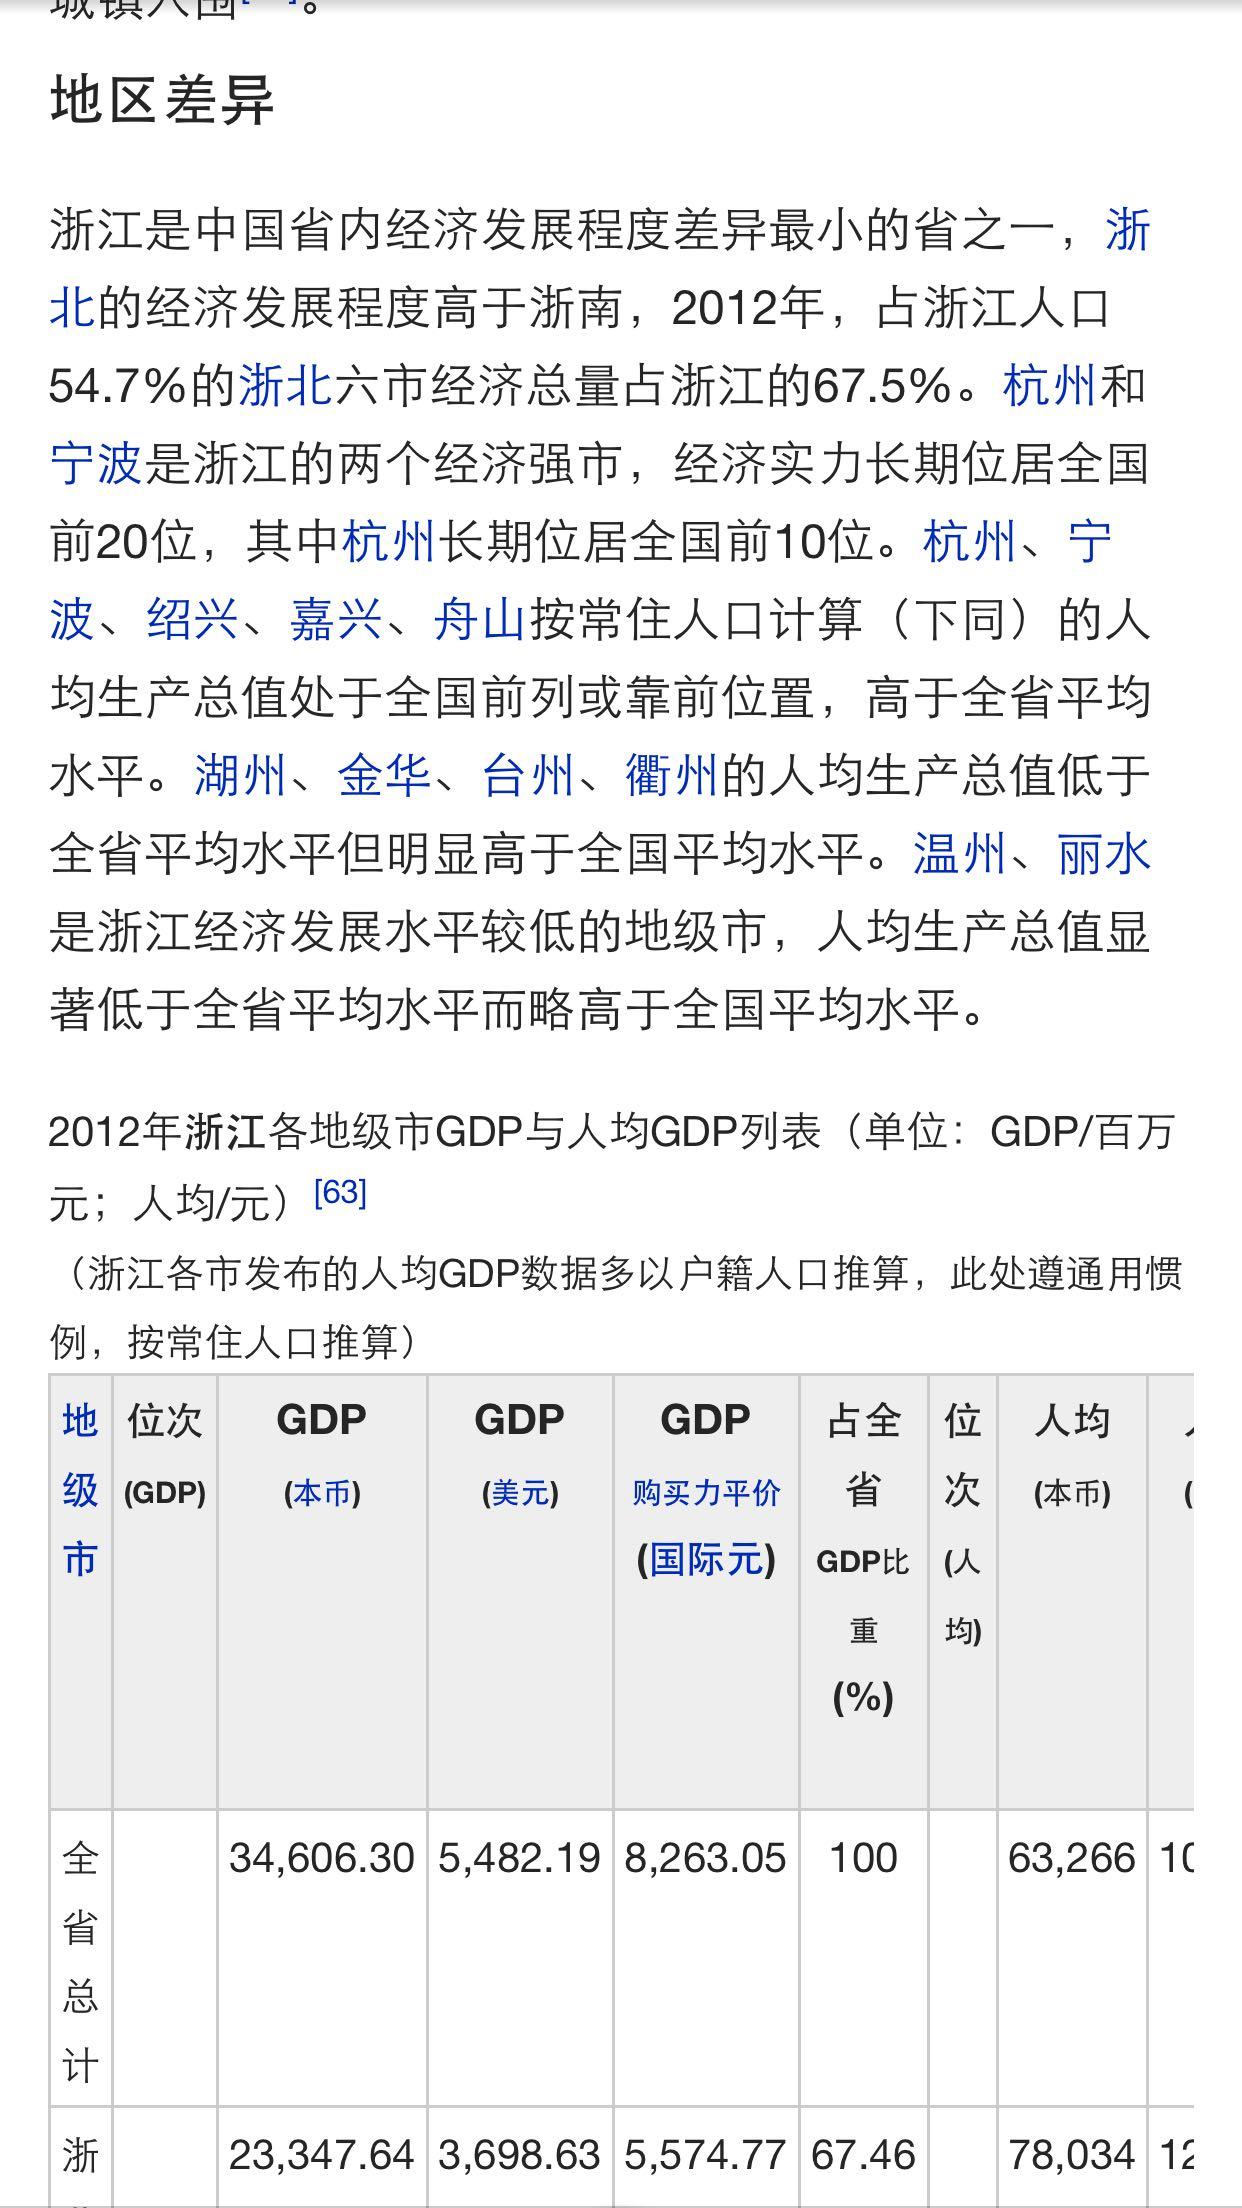 江苏的人均 GDP 已经超越浙江,为什么感觉浙江